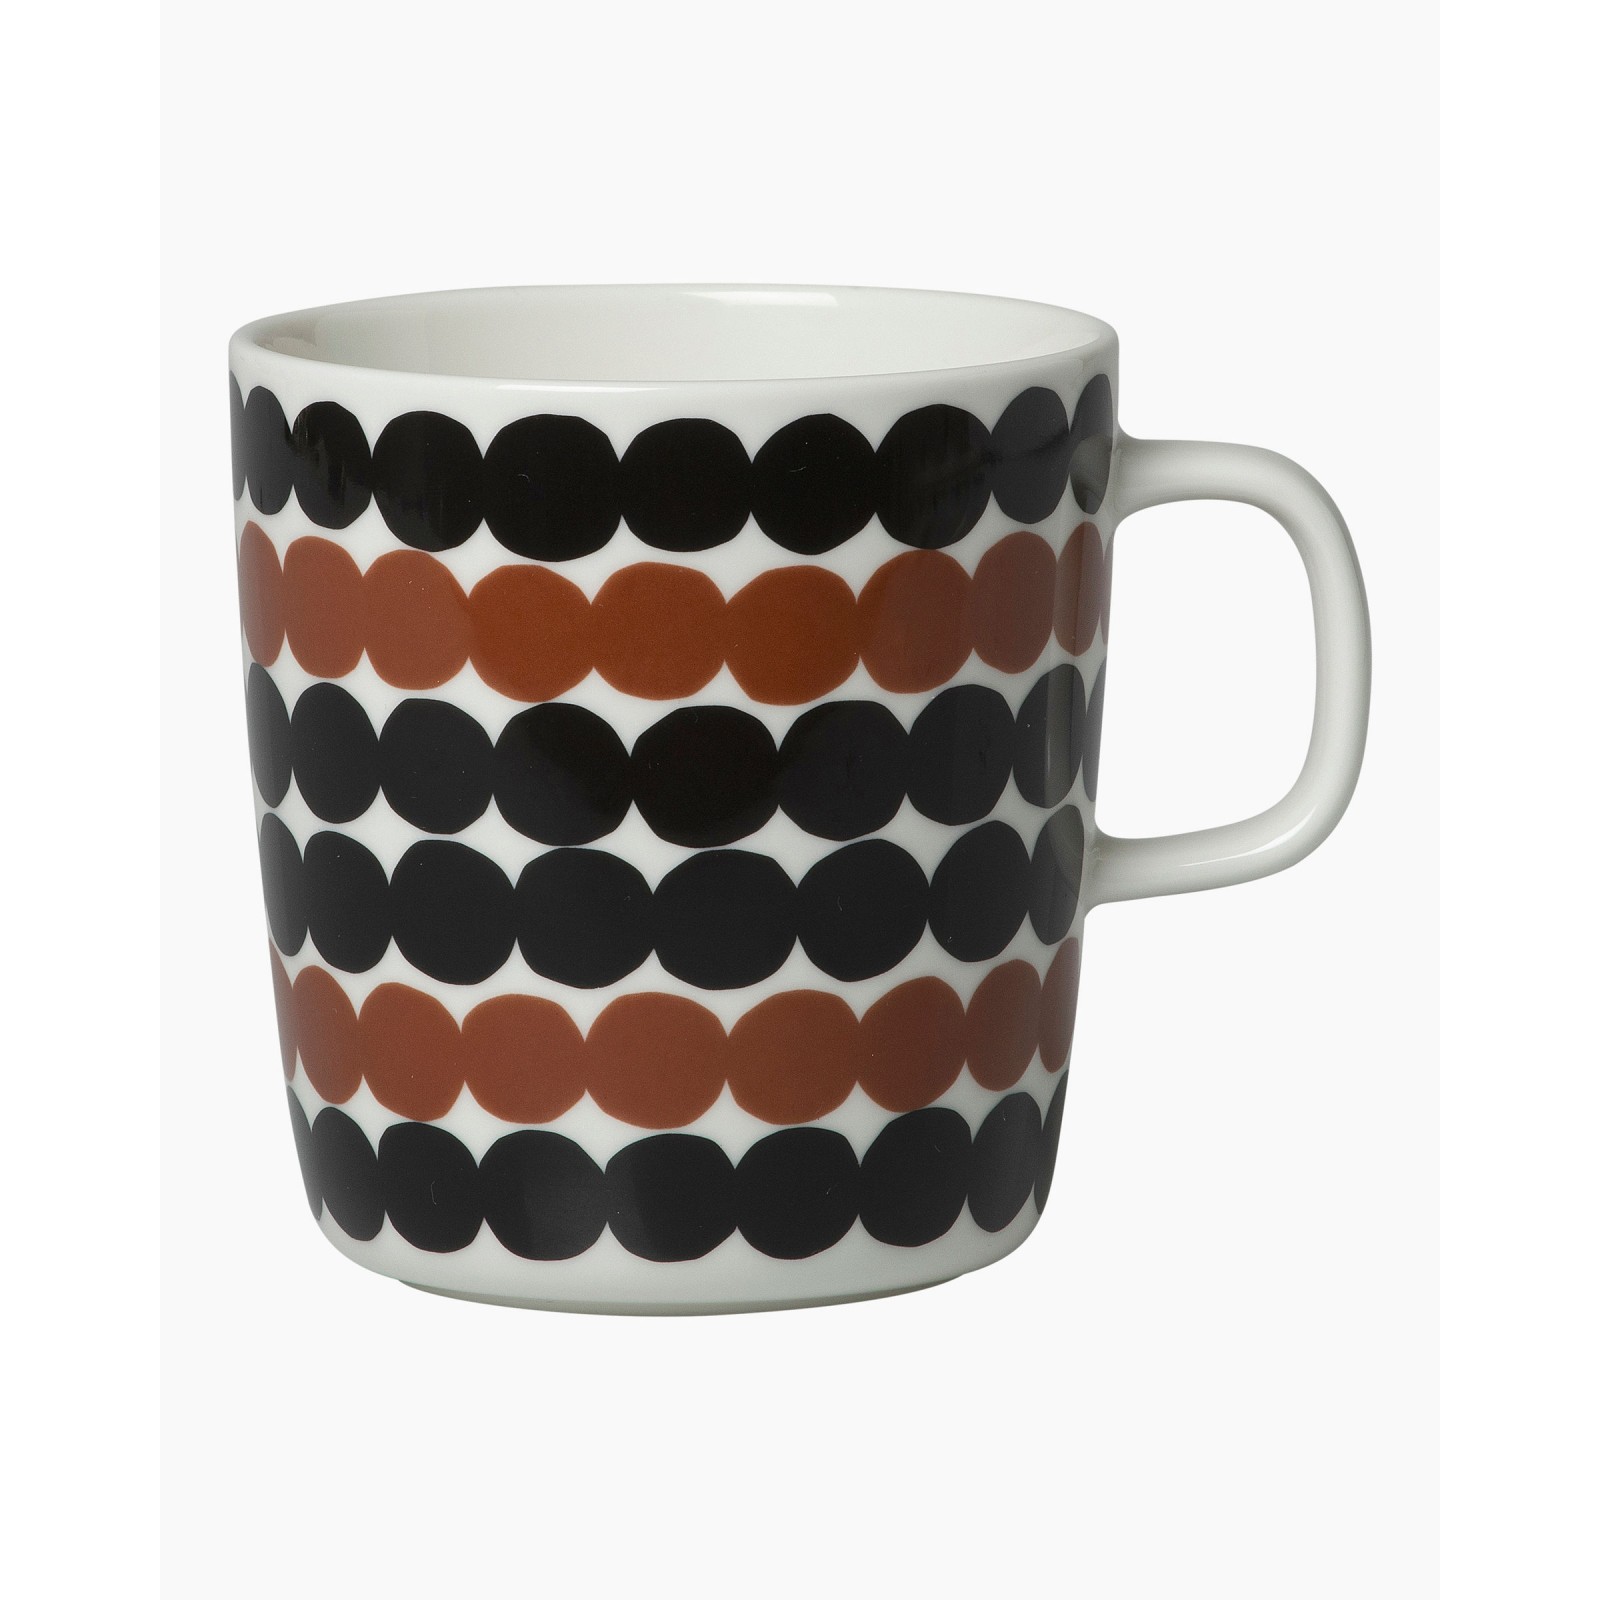 Rasymatto Mug 2,5dl black/brown